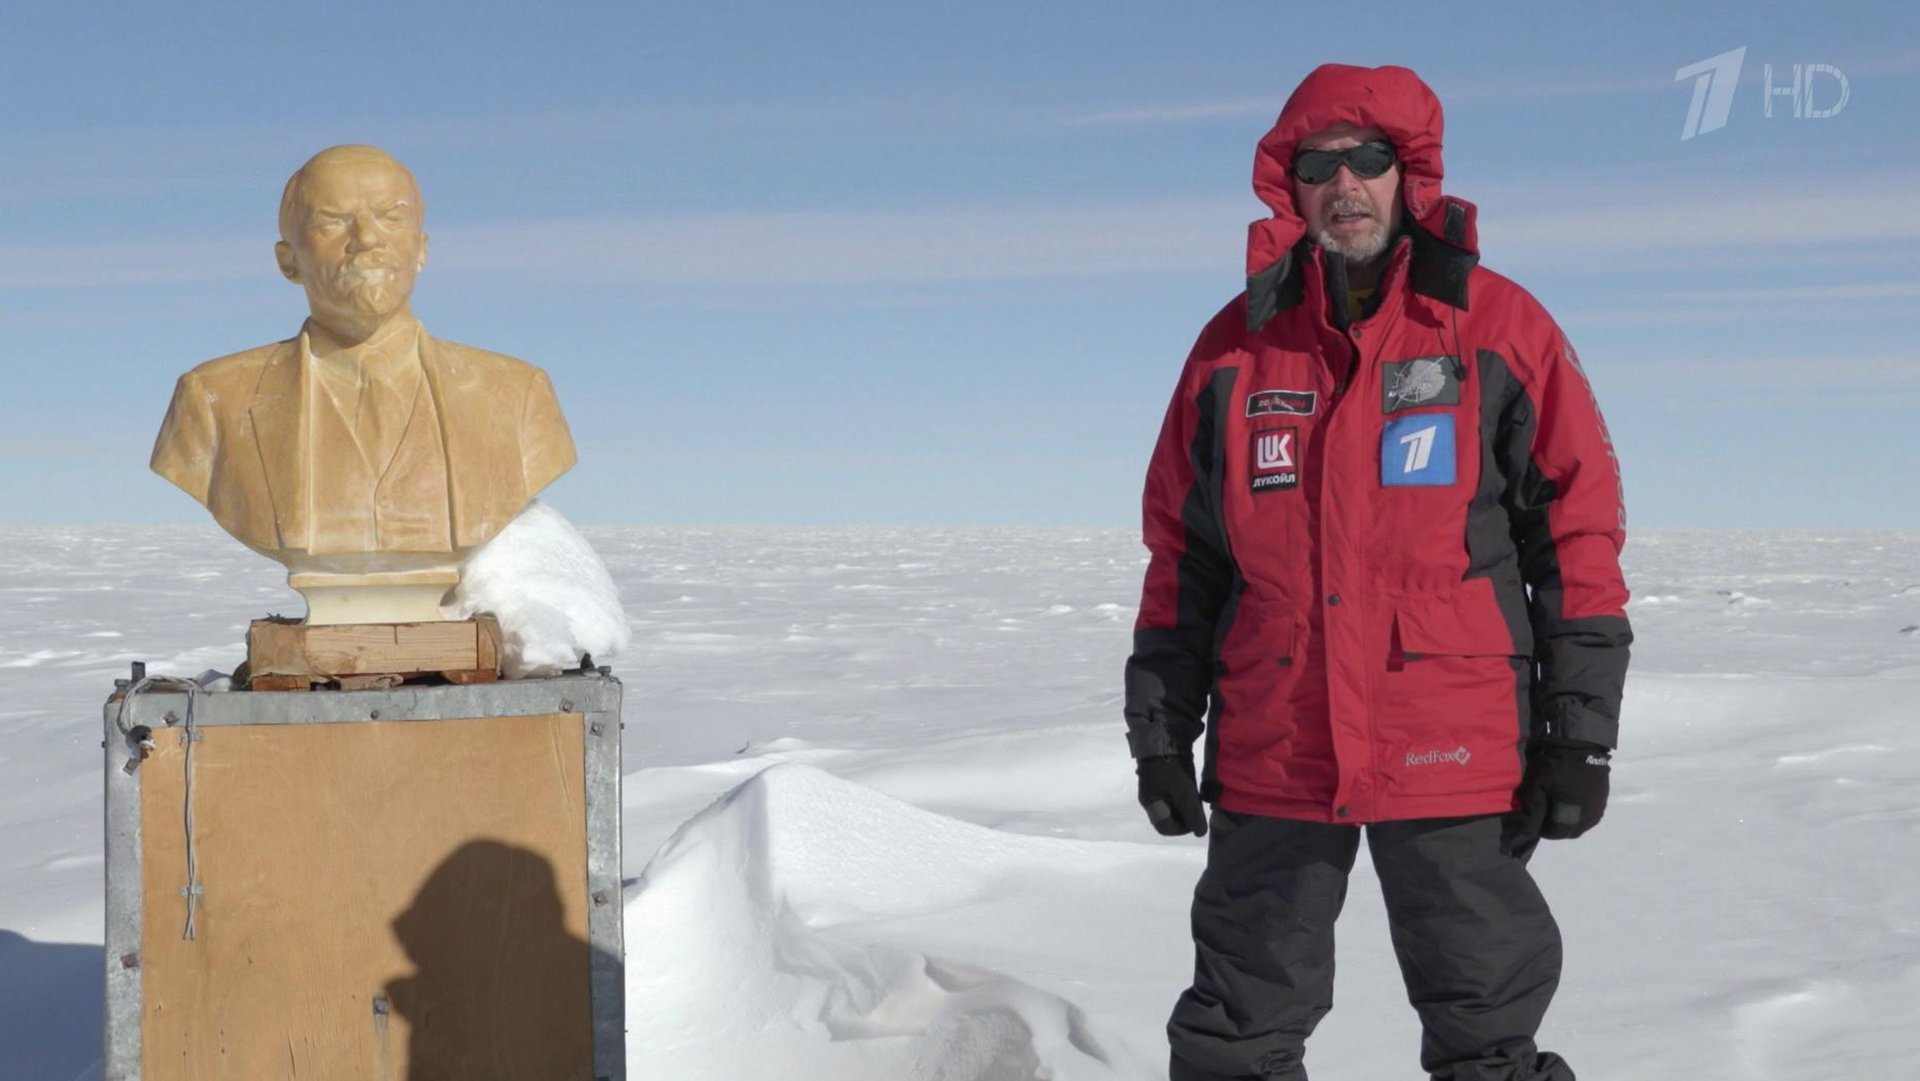 Кто является руководителем экспедиции покорившей южный полюс. Валдис Пельш Экспедиция в Антарктиду. Антарктида 200 лет Пельш. Антарктида Южный полюс Экспедиция. Южный полюс недоступности Антарктиды.